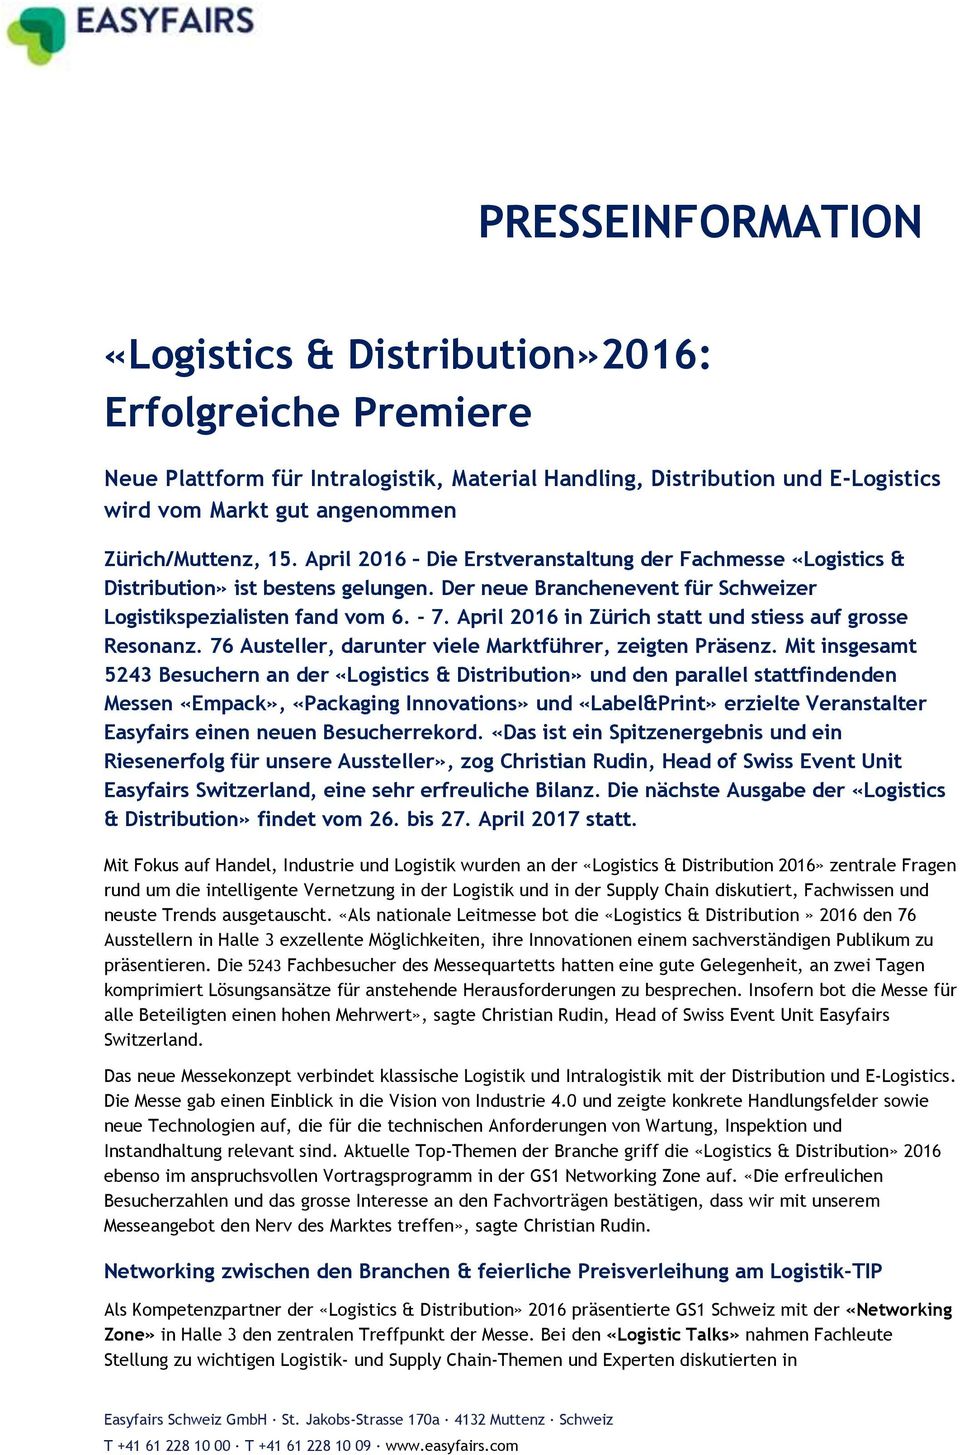 April 2016 in Zürich statt und stiess auf grosse Resonanz. 76 Austeller, darunter viele Marktführer, zeigten Präsenz.